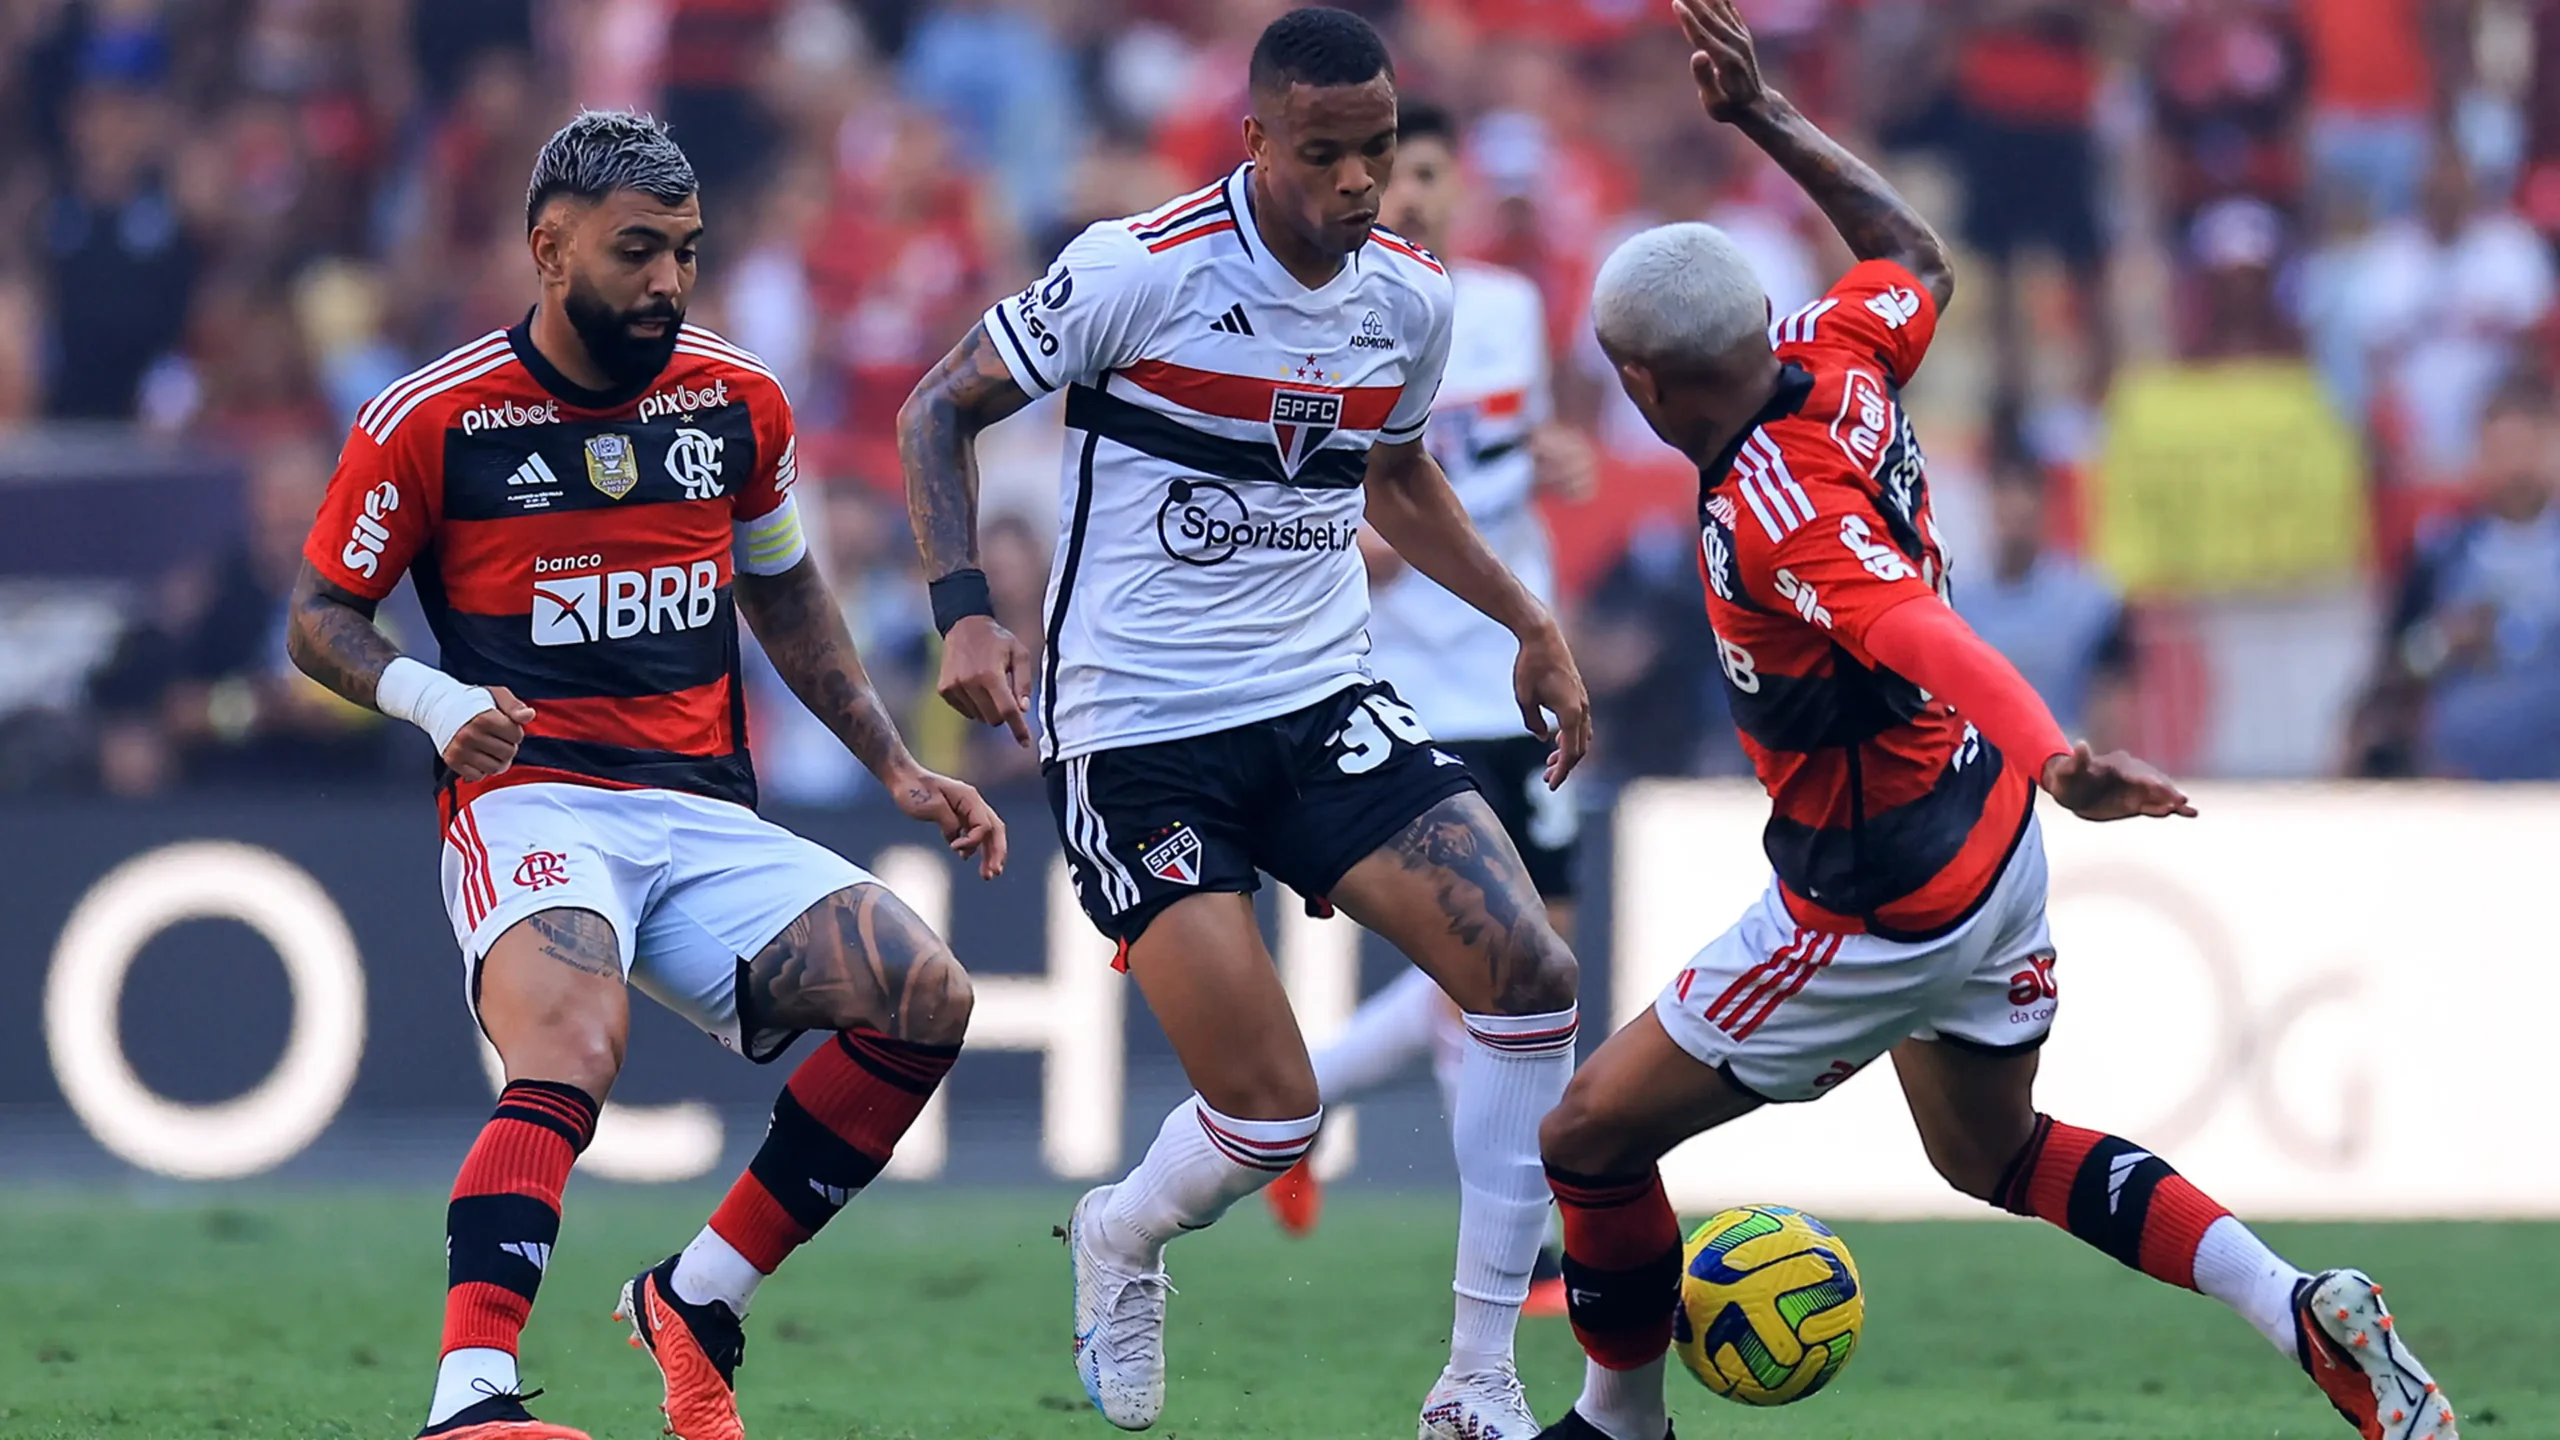 JOGO DA GLOBO HOJE (06/12): Vai passar o jogo do Flamengo? Veja programação